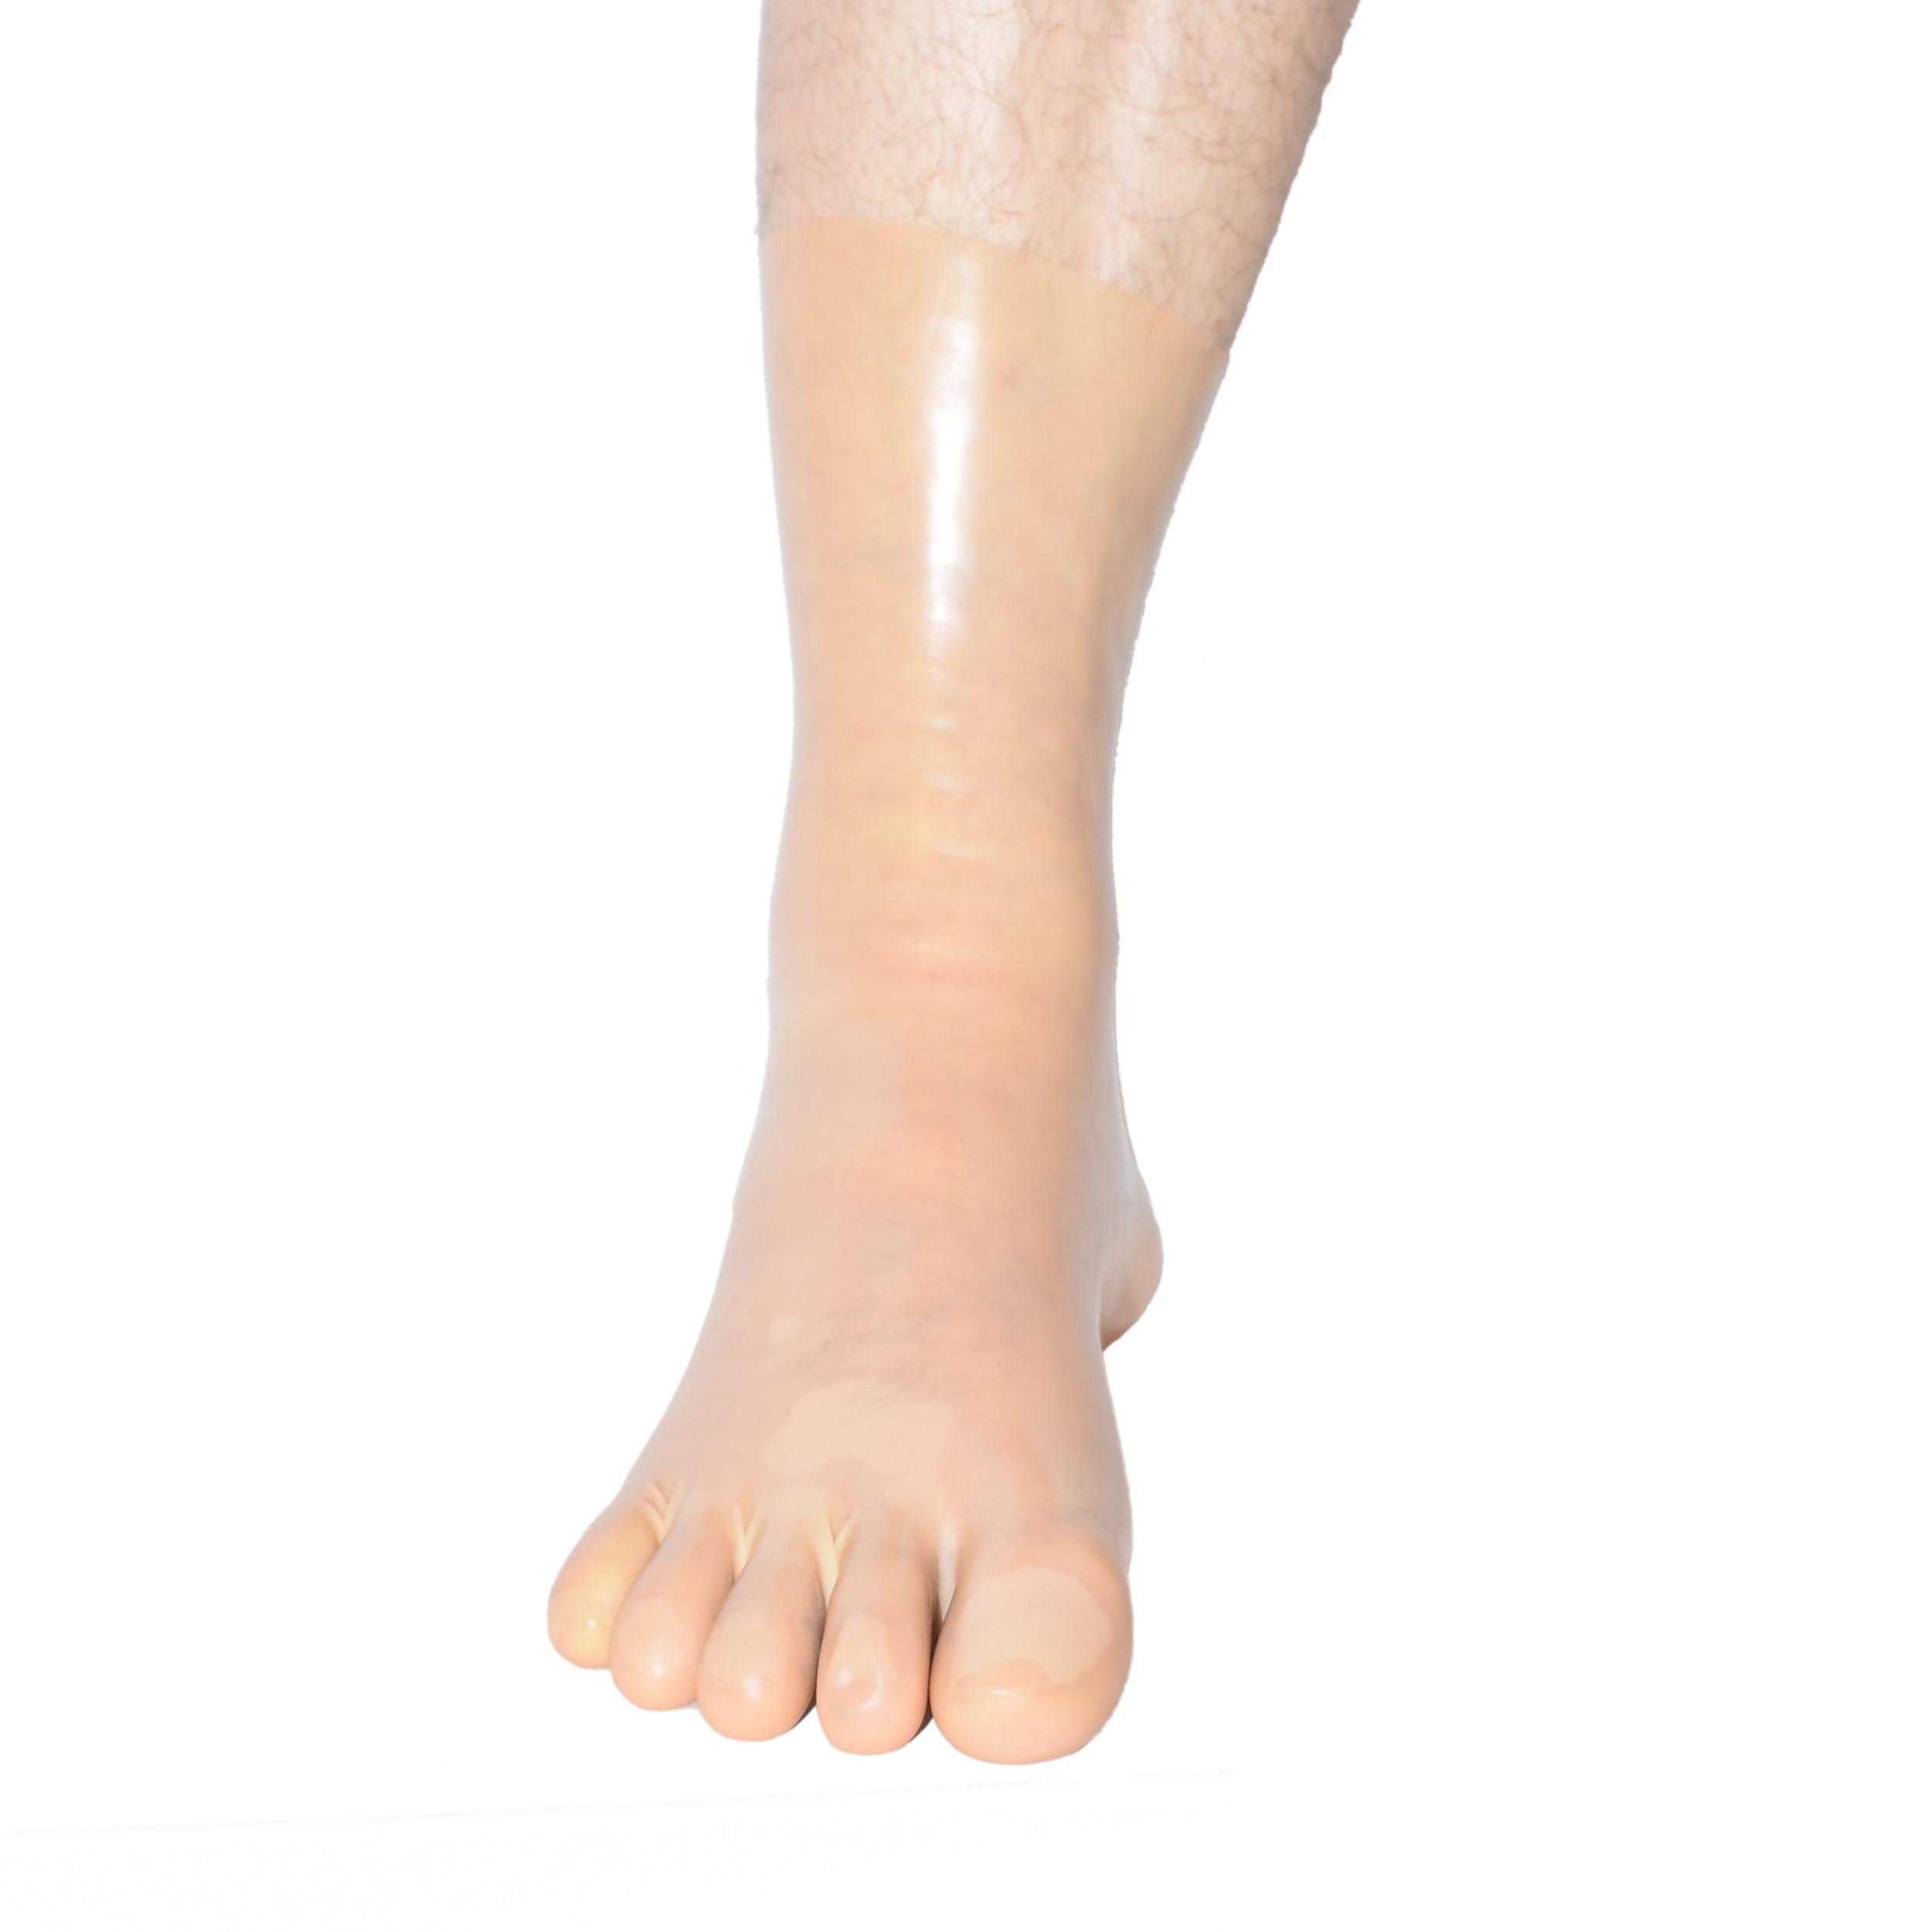 Rubberfashion Sexy Latex Zehen Socken kurz - Zehensocken knöchel lang - Latex Strümpfe für Damen und Herren